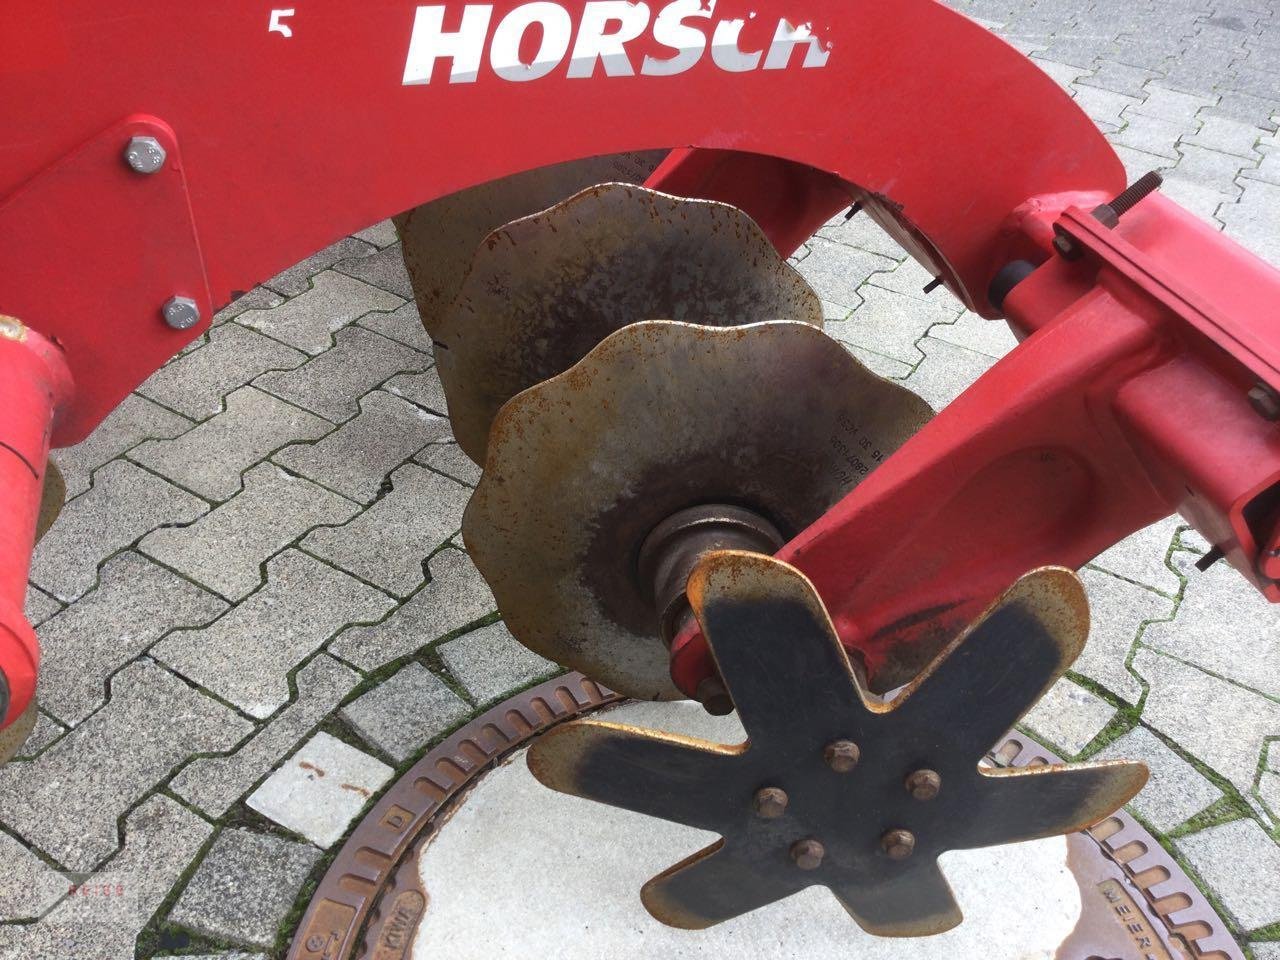 Scheibenegge des Typs Horsch Joker 5 CT, Gebrauchtmaschine in Lippetal / Herzfeld (Bild 9)